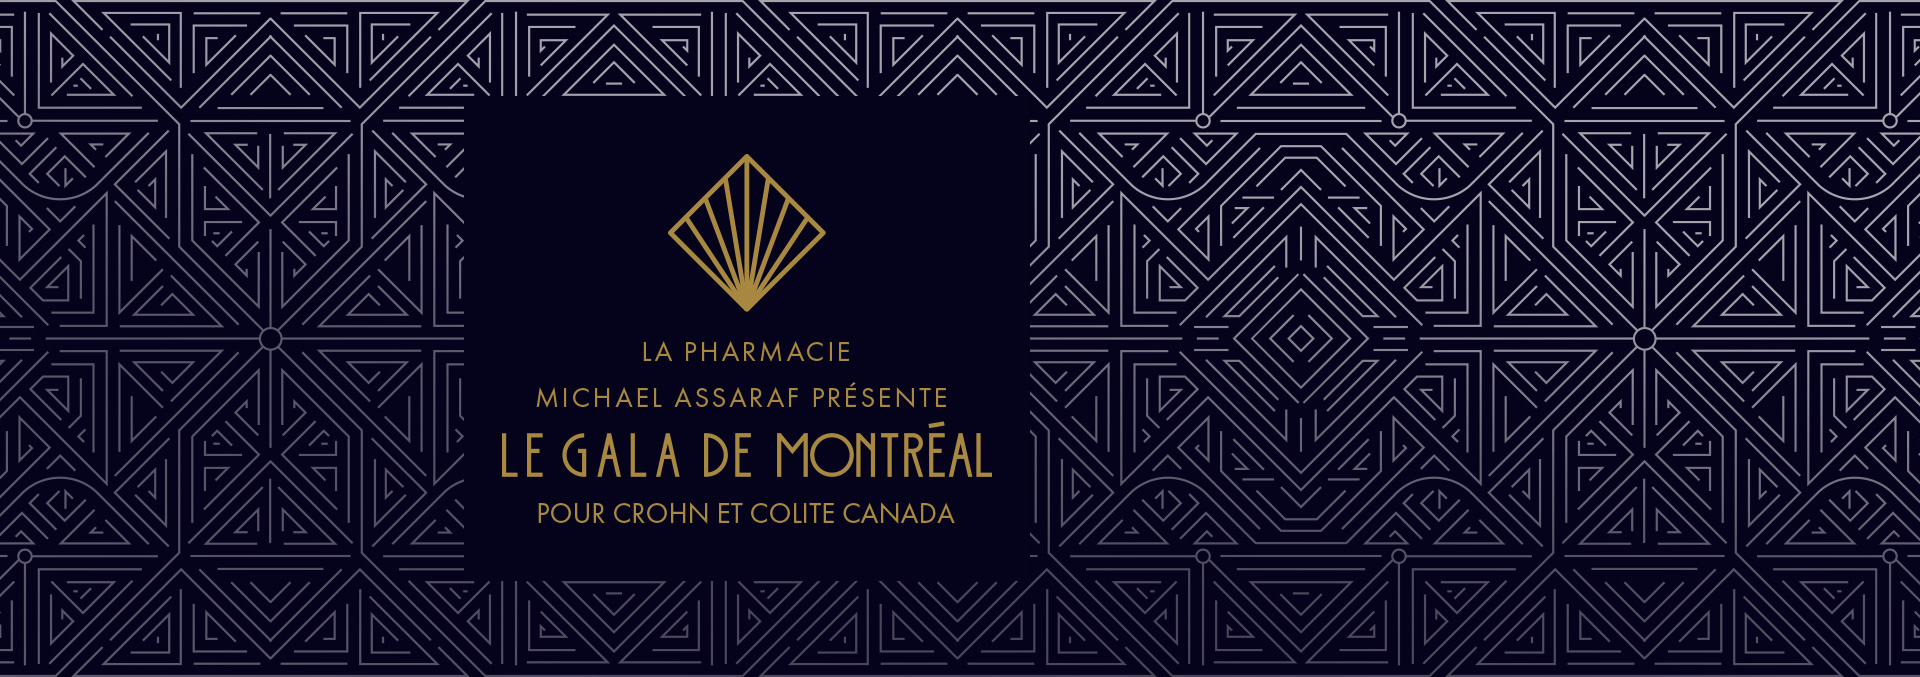 Pharmacie Michael Assaraf présente le gala de Montréal pour Crohn et Colite Canada sur fond de casino.